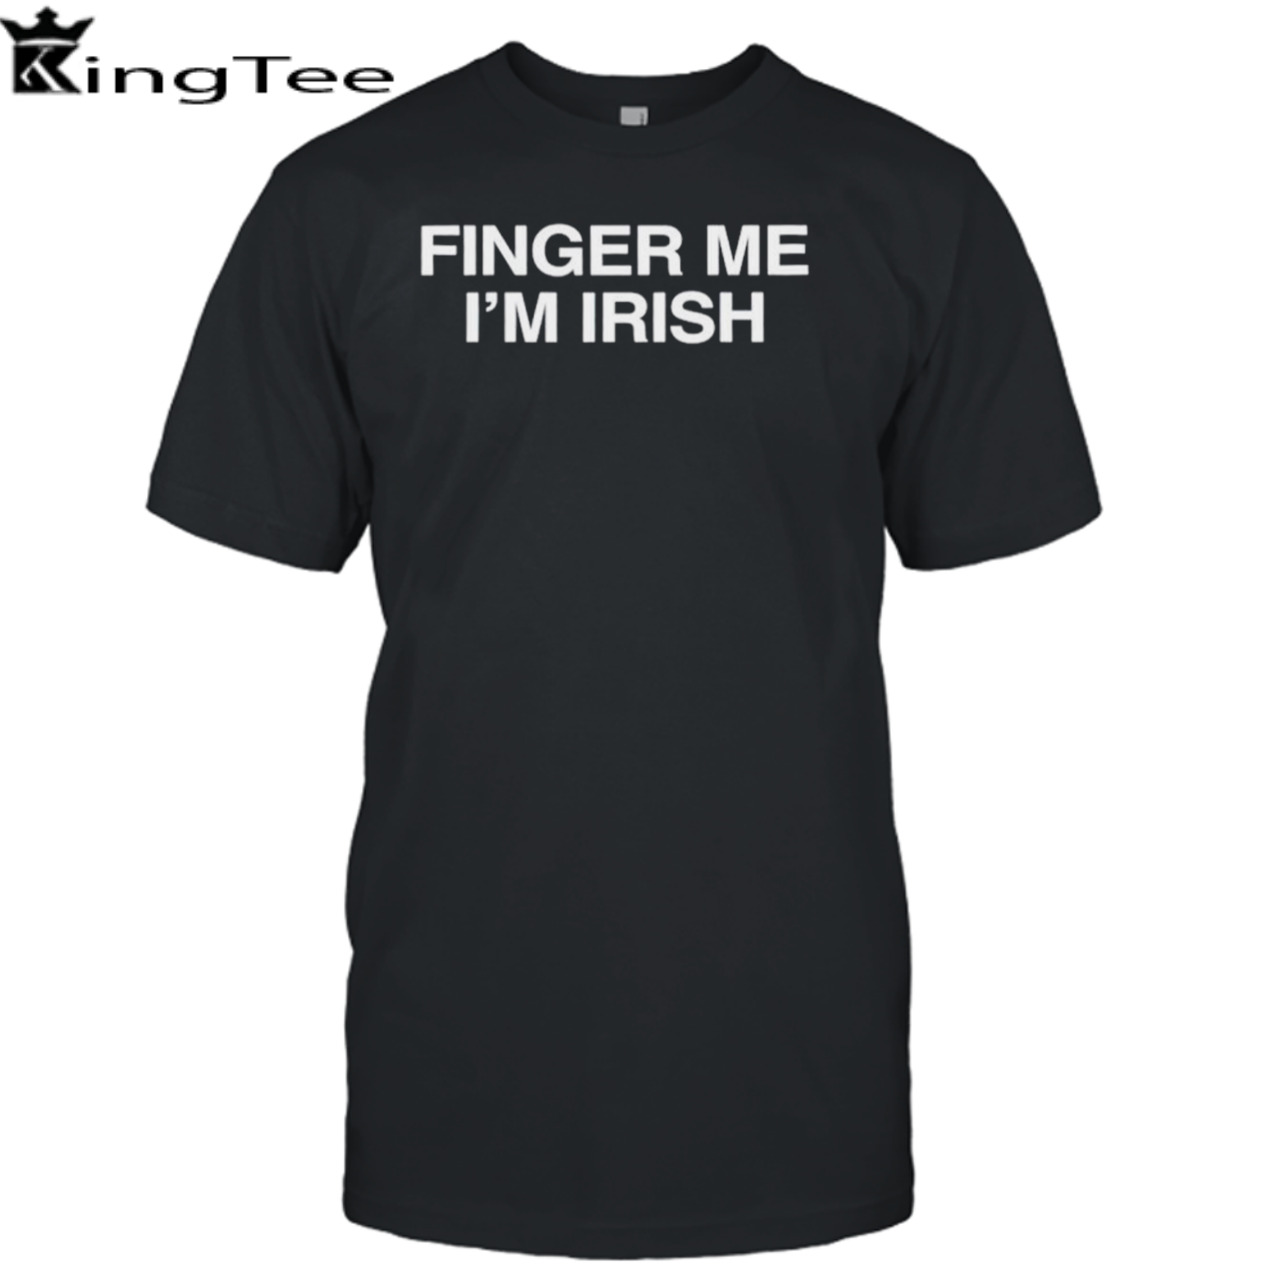 Finger me I’m Irish shirt